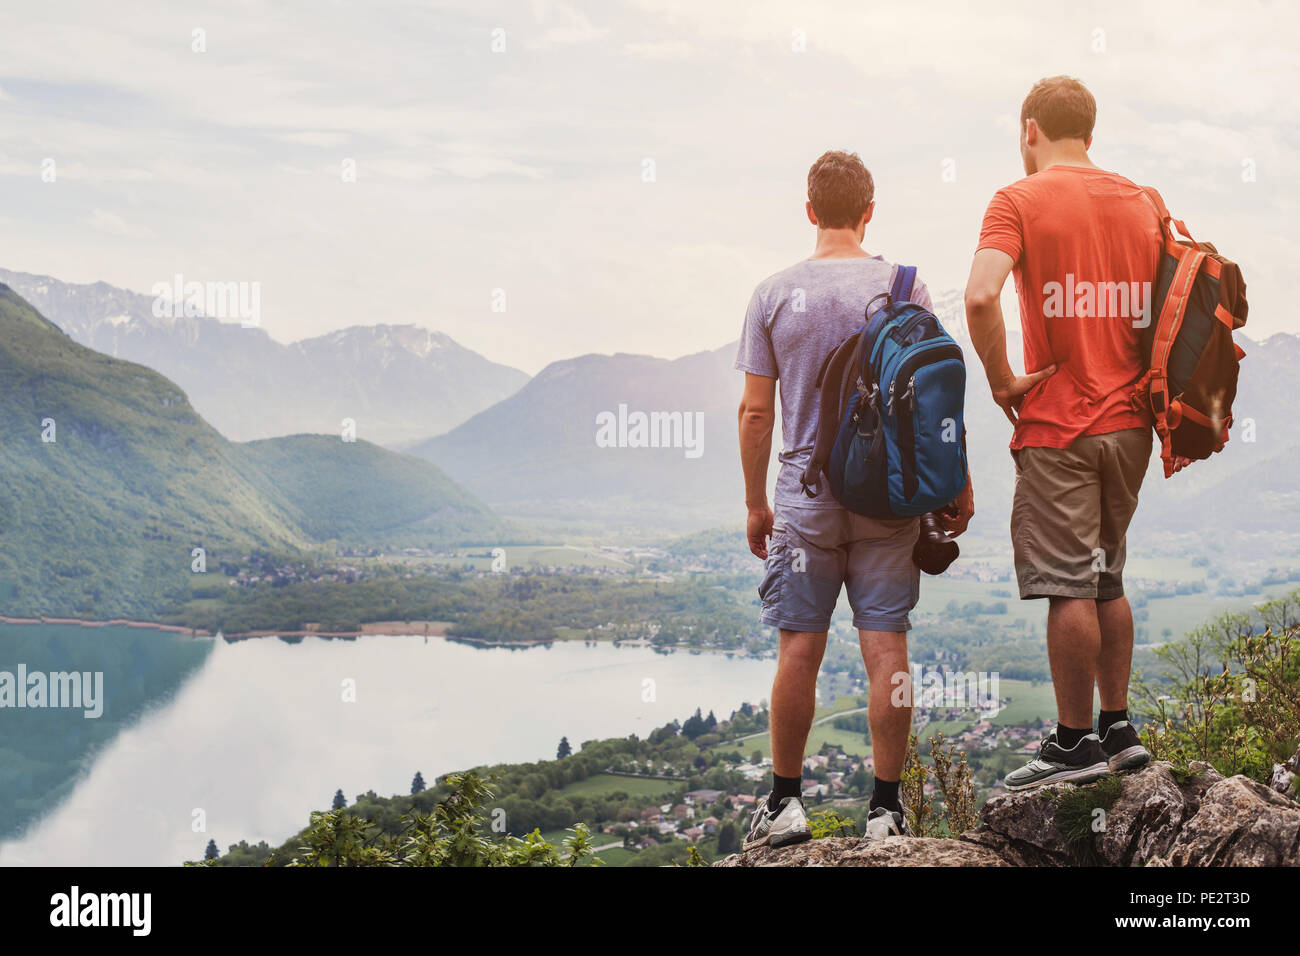 Freunde wandern in Europa wandern in den Alpen in Annecy, Frankreich, im Sommer Aktivität mit Rucksack, zwei Menschen Backpackers auf Berg ein Stockfoto